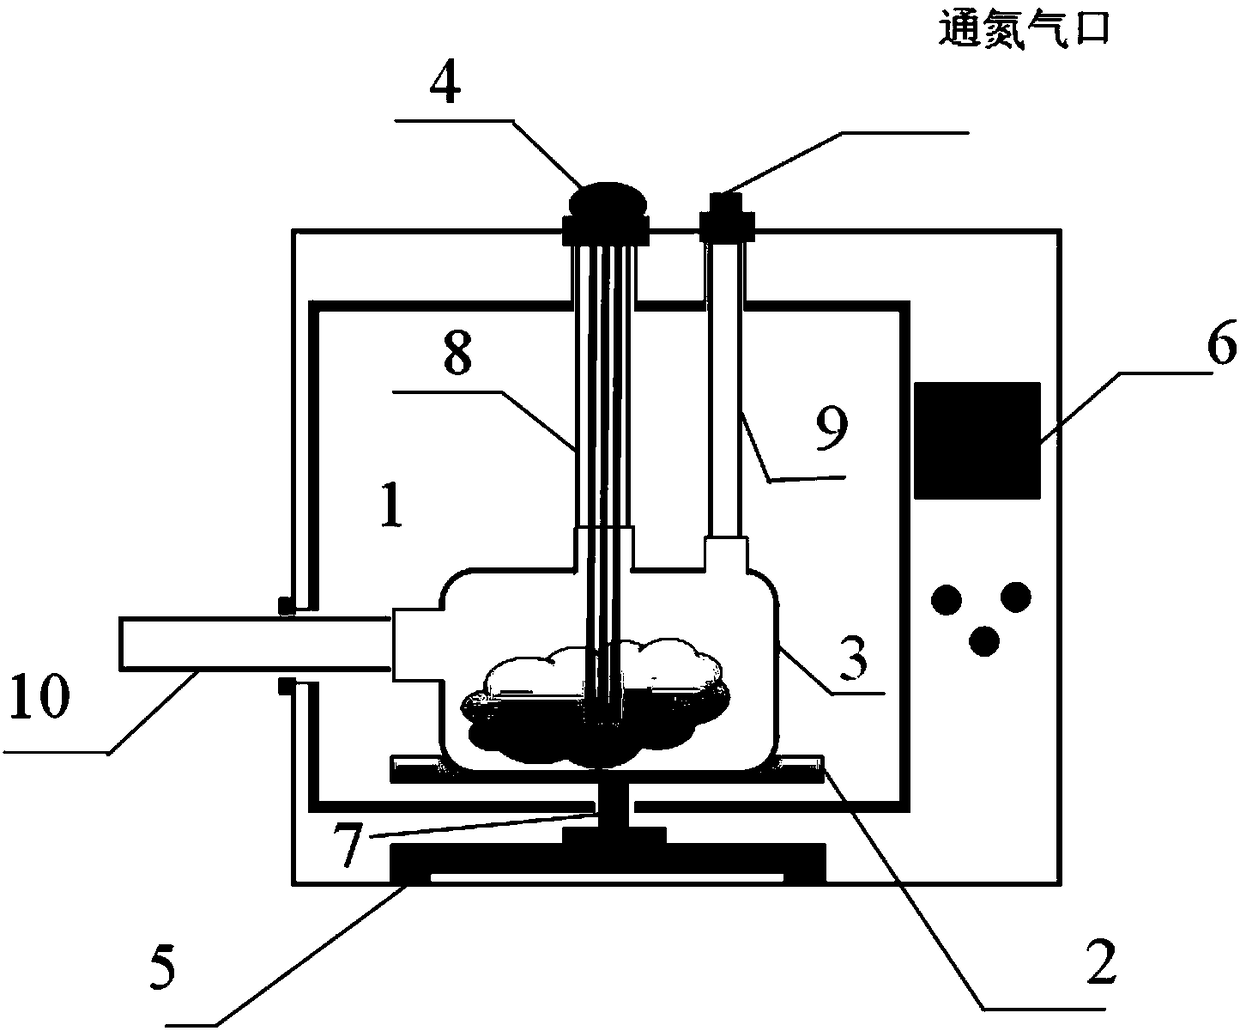 Microwave thermogravimetric analysis system